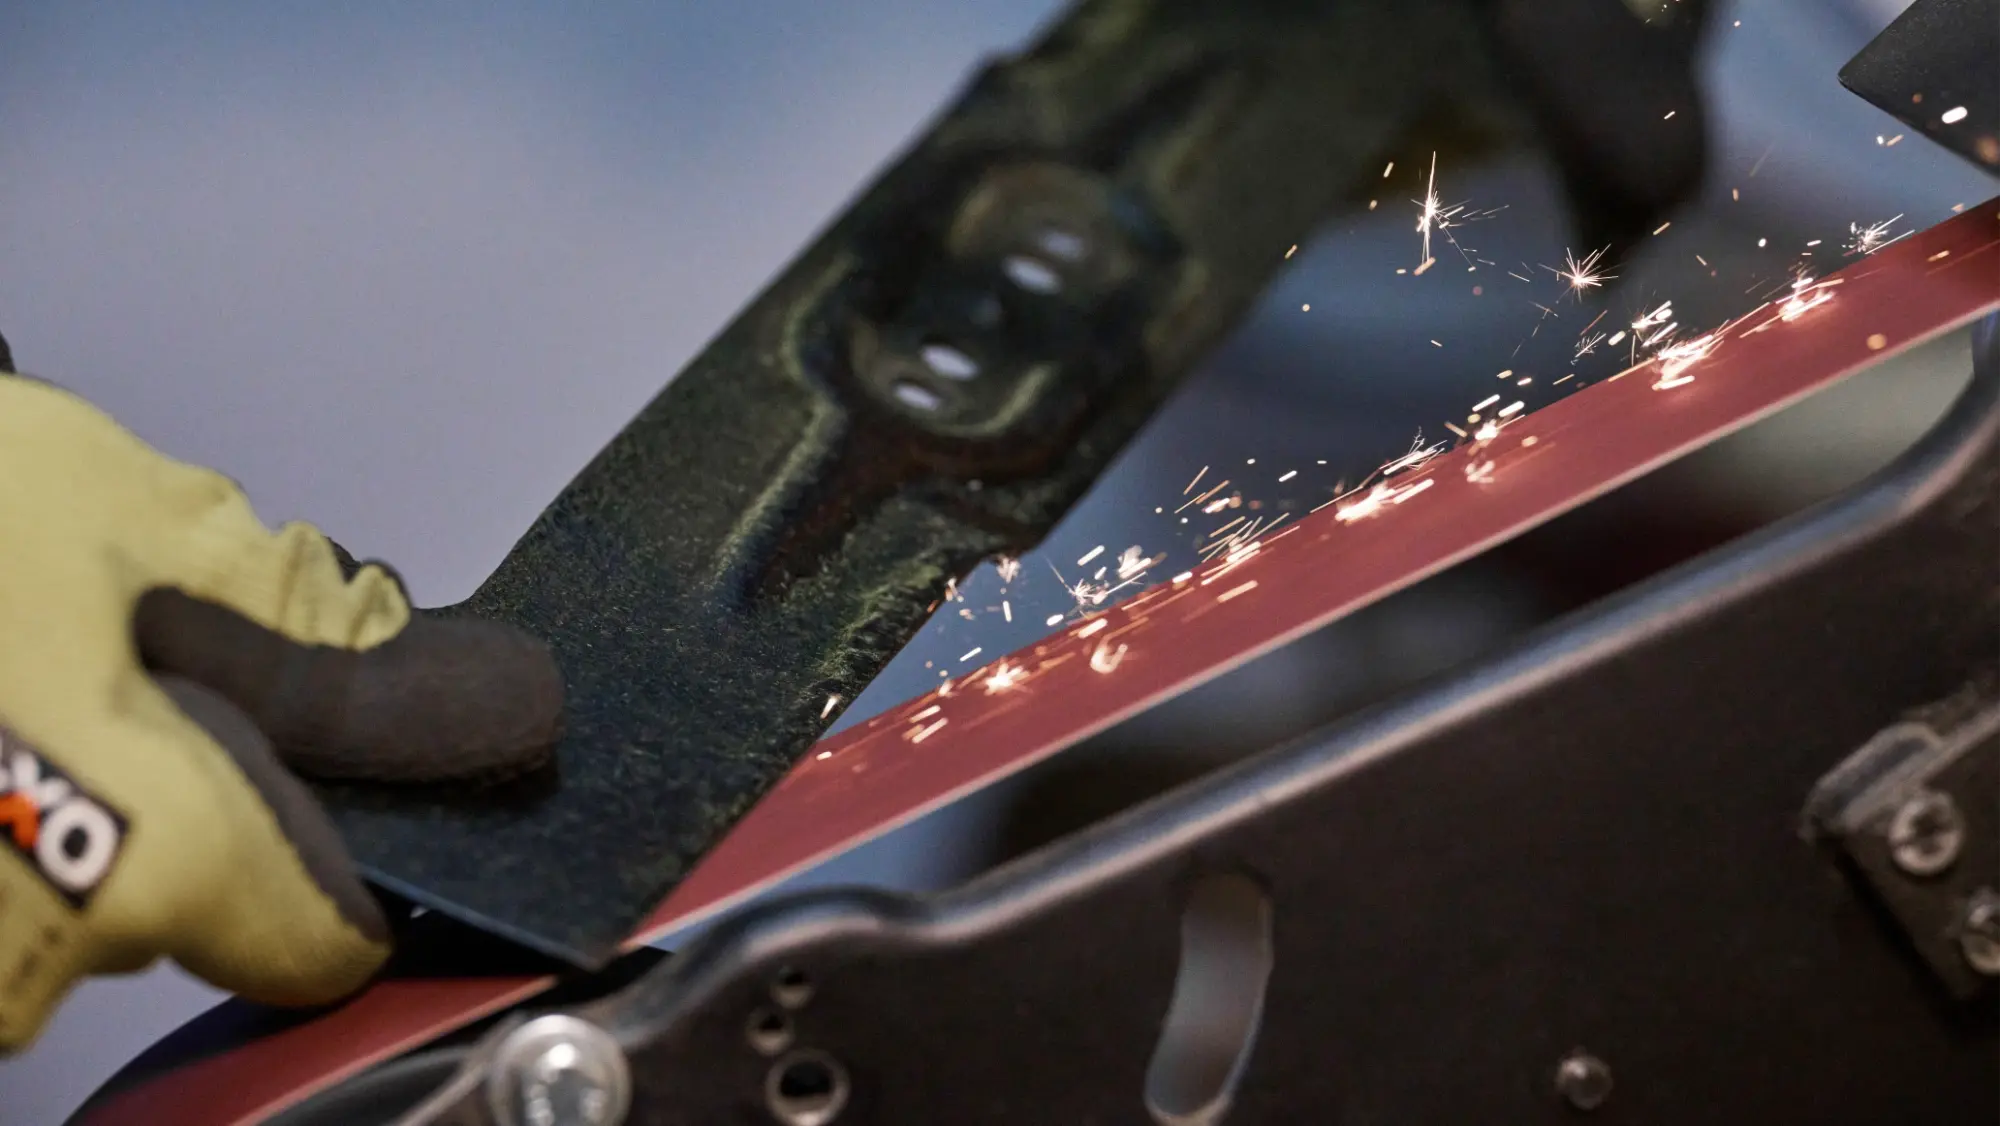 Rasenmähermesser schärfen am Schleifband - Schleifservice Werkzeuge schärfen 